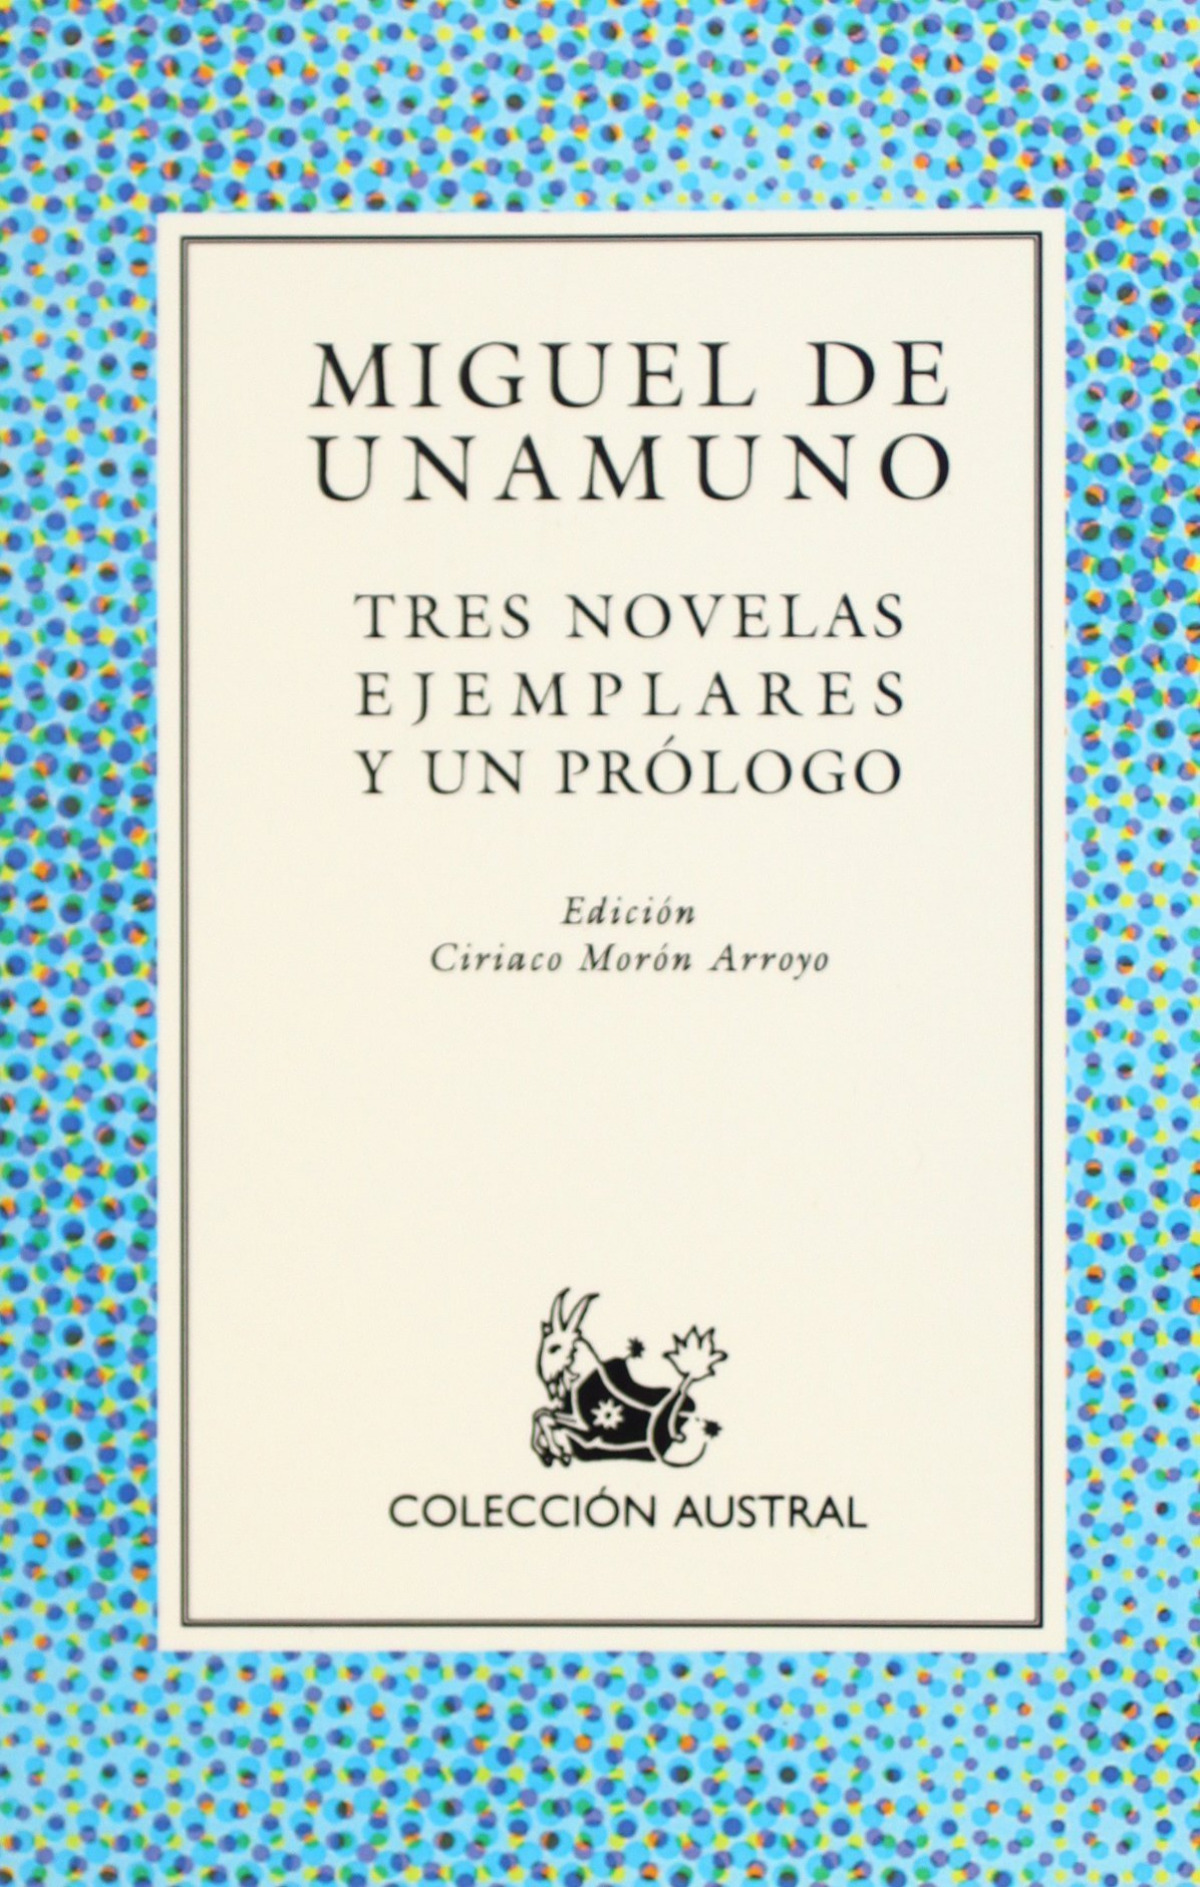 Tres novelas ejemplares - Miguel de Unamuno